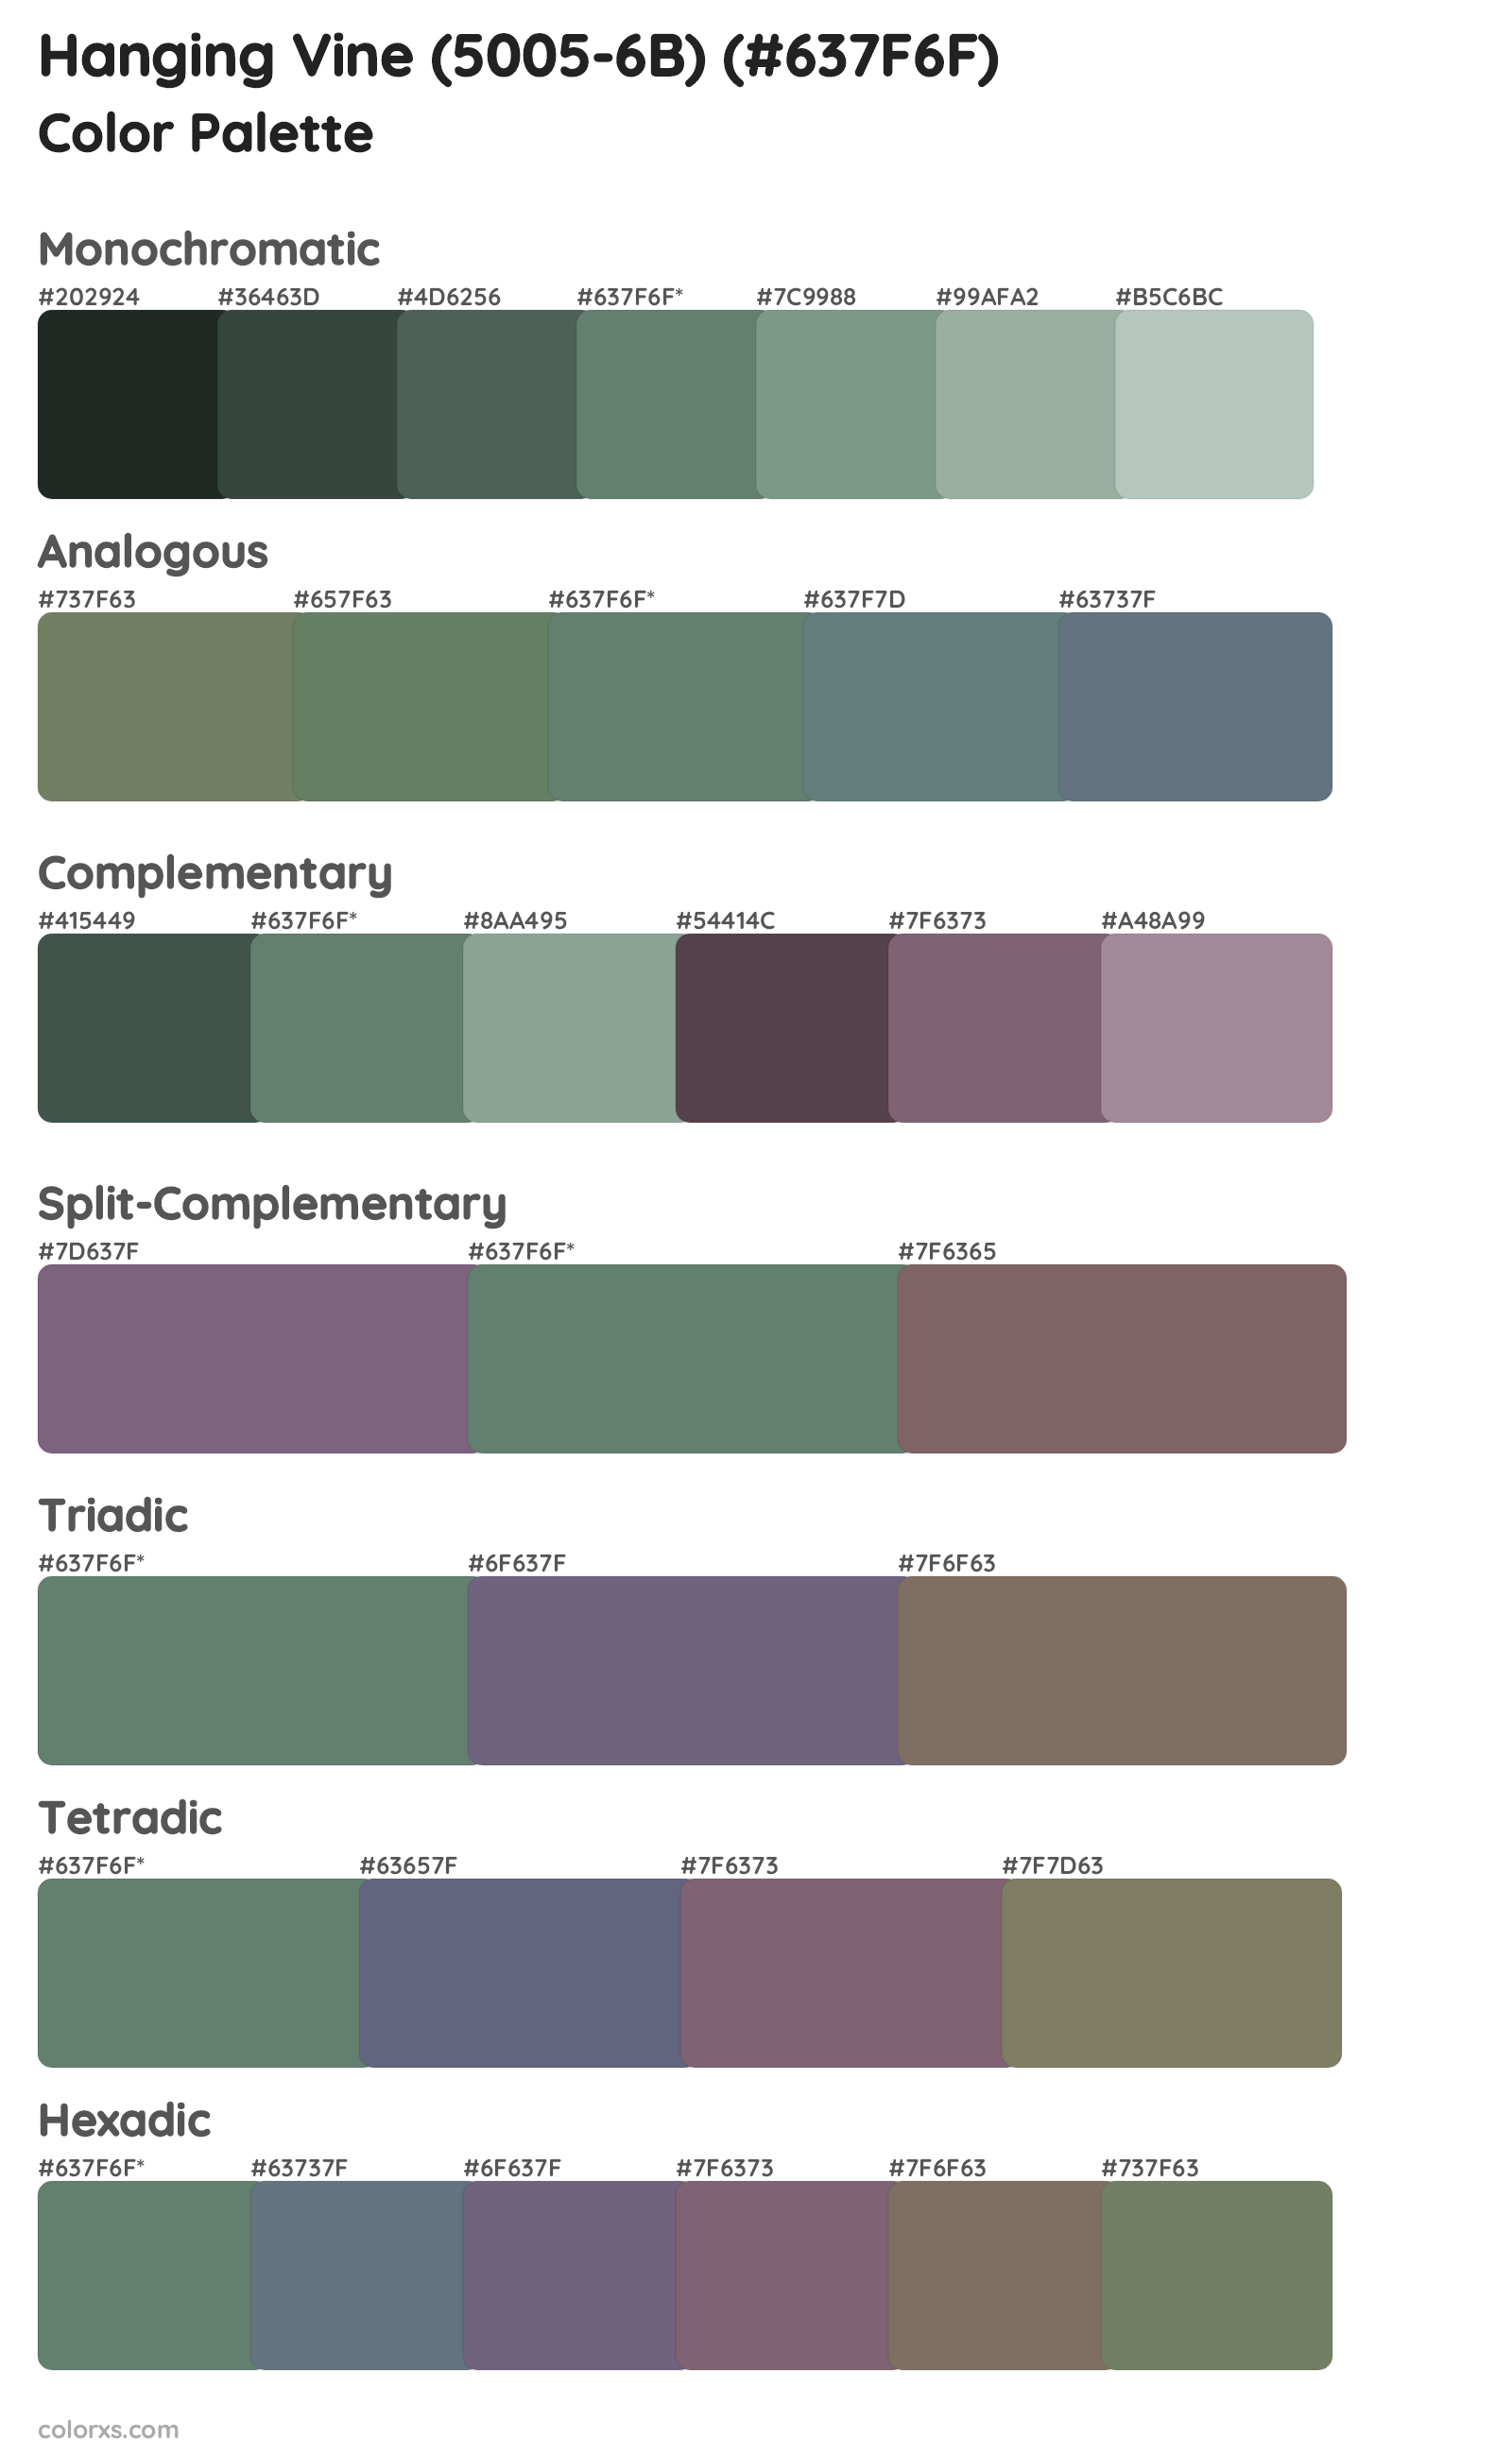 Hanging Vine (5005-6B) Color Scheme Palettes